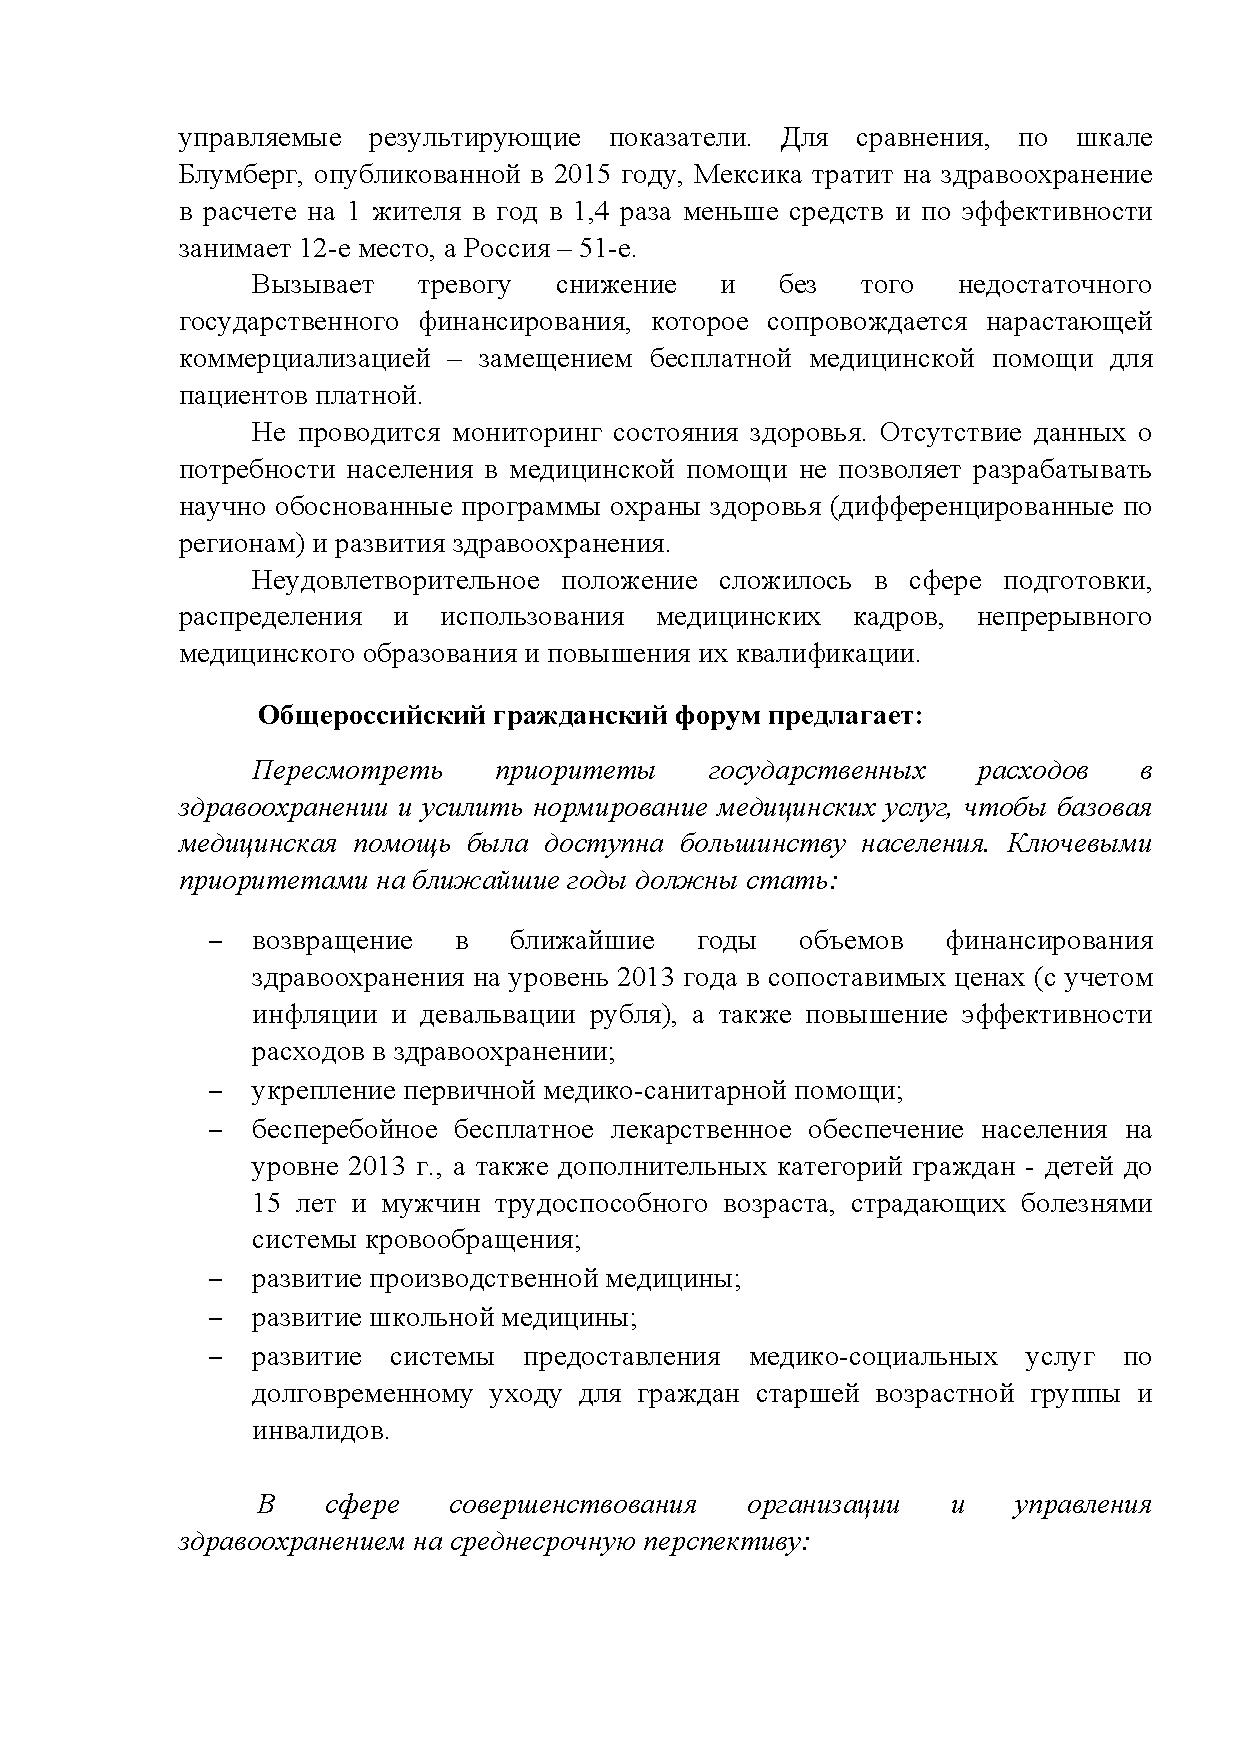  Опубликованы Предложения Общероссийского гражданского форума 2015 - фото 27